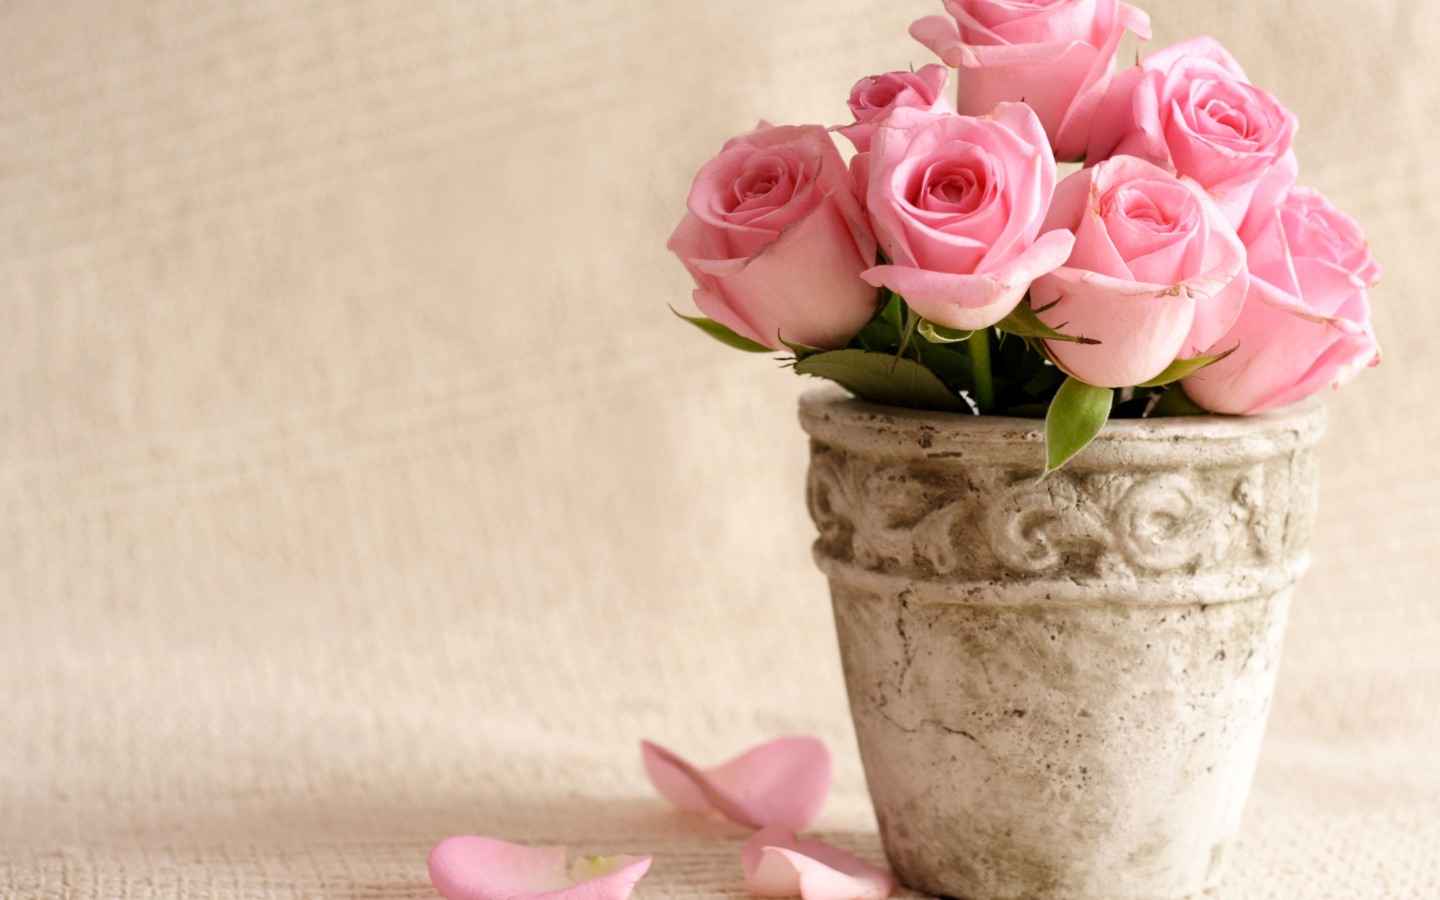 Букет розовых роз в глиняной вазе